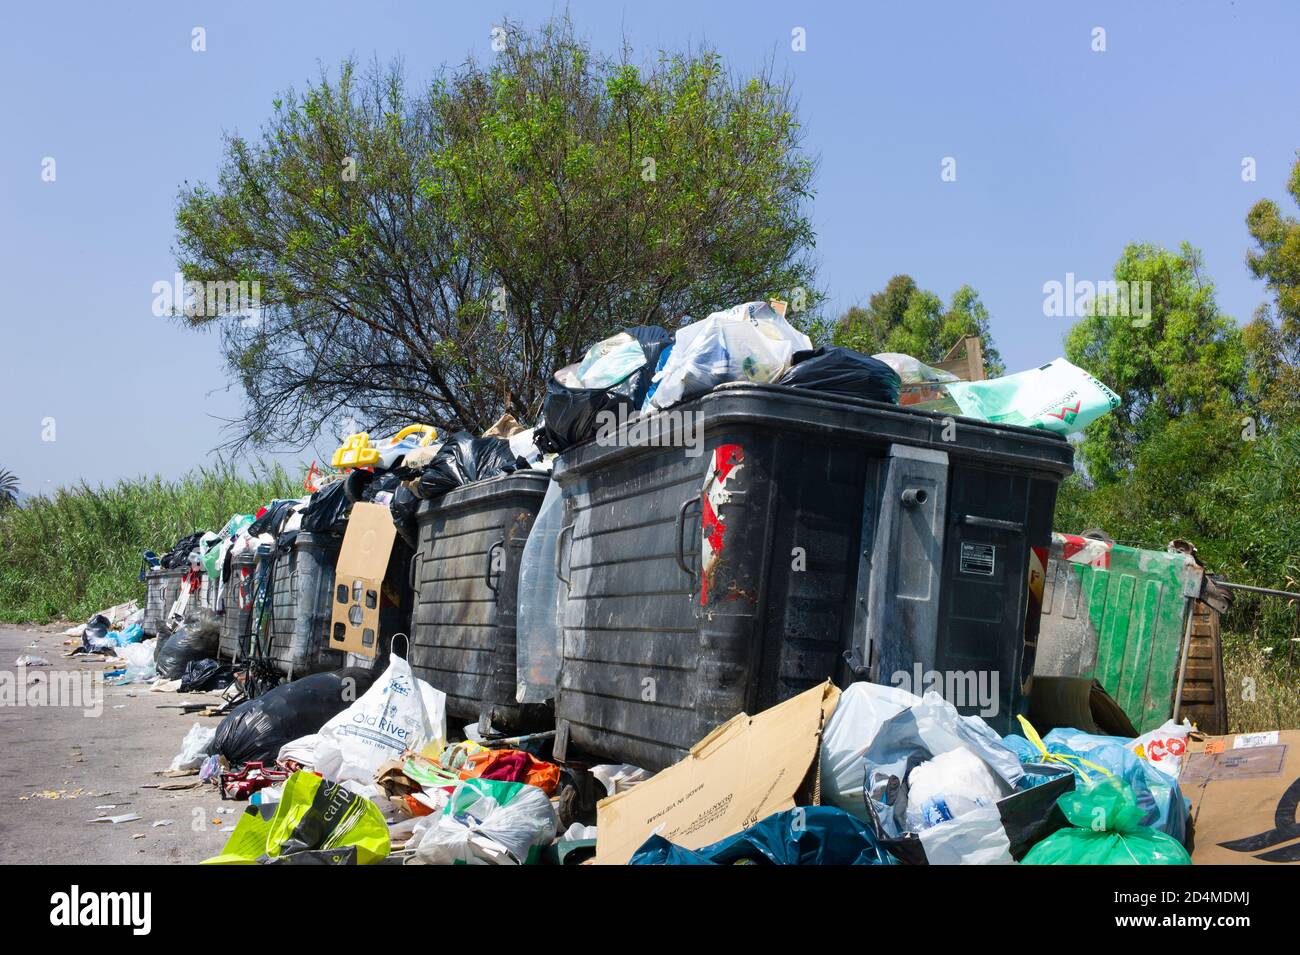 Überfließende Müllcontainer und aufgerissene Müllsäcke am Rande einer Straße aufgrund eines Streiks der Gemeinde Sizilien, Italien Stockfoto